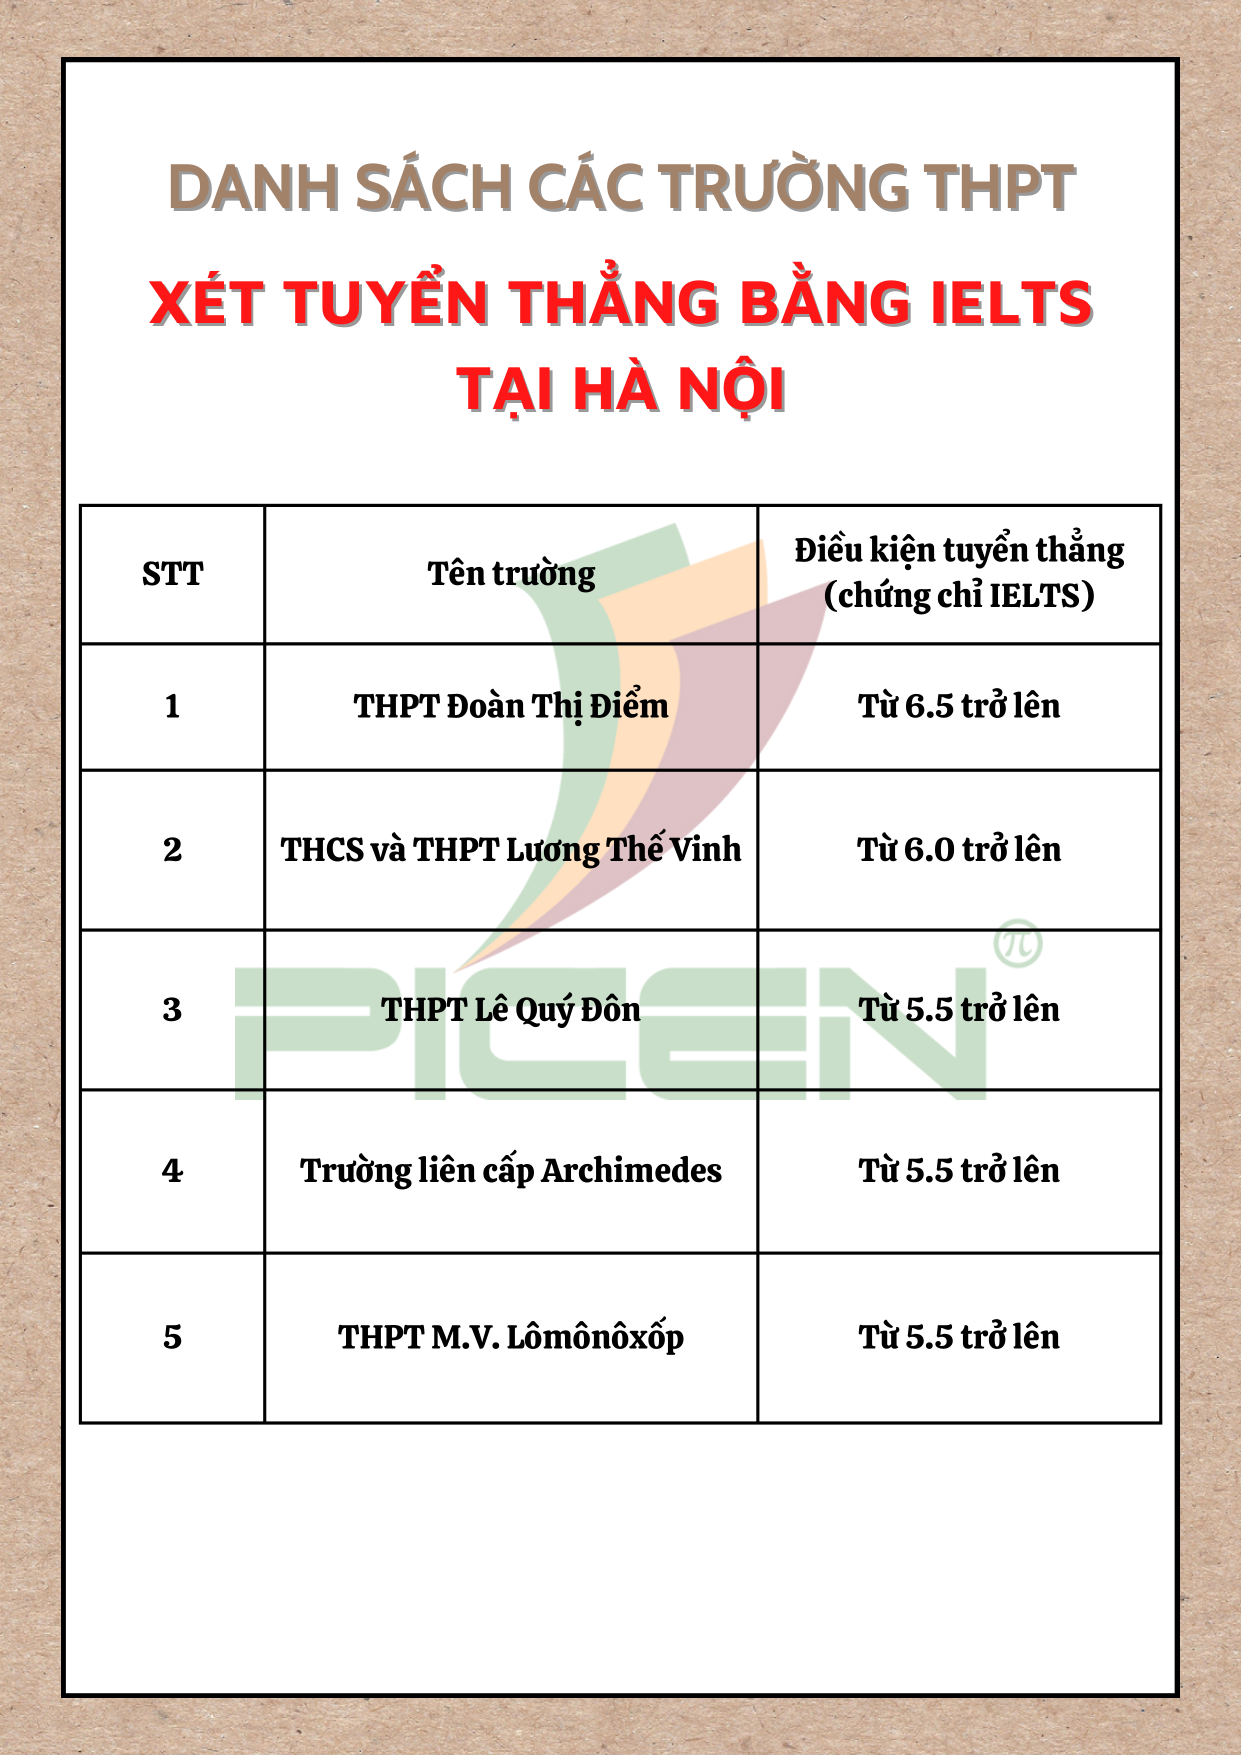 Danh sách các trường THPT xét tuyển thằng bằng IELTS tại Hà Nội